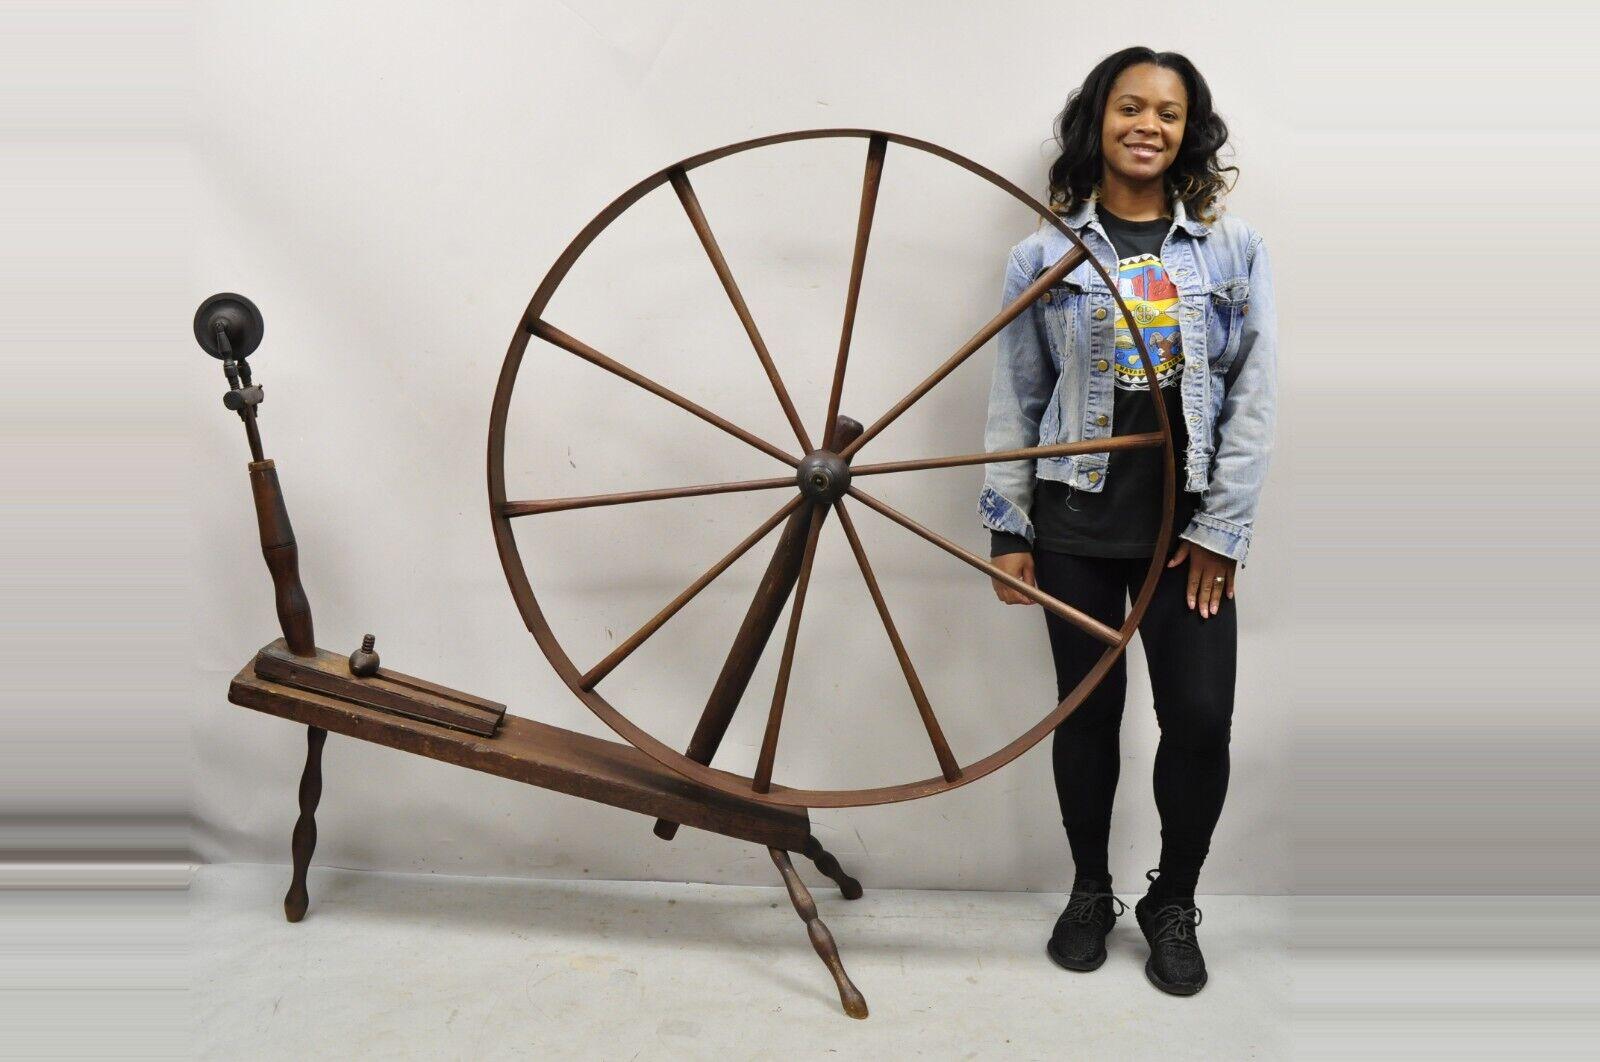 Antikes amerikanisches primitives hölzernes Landspinnrad aus der Kolonialzeit. Artikel verfügt über einen 46 